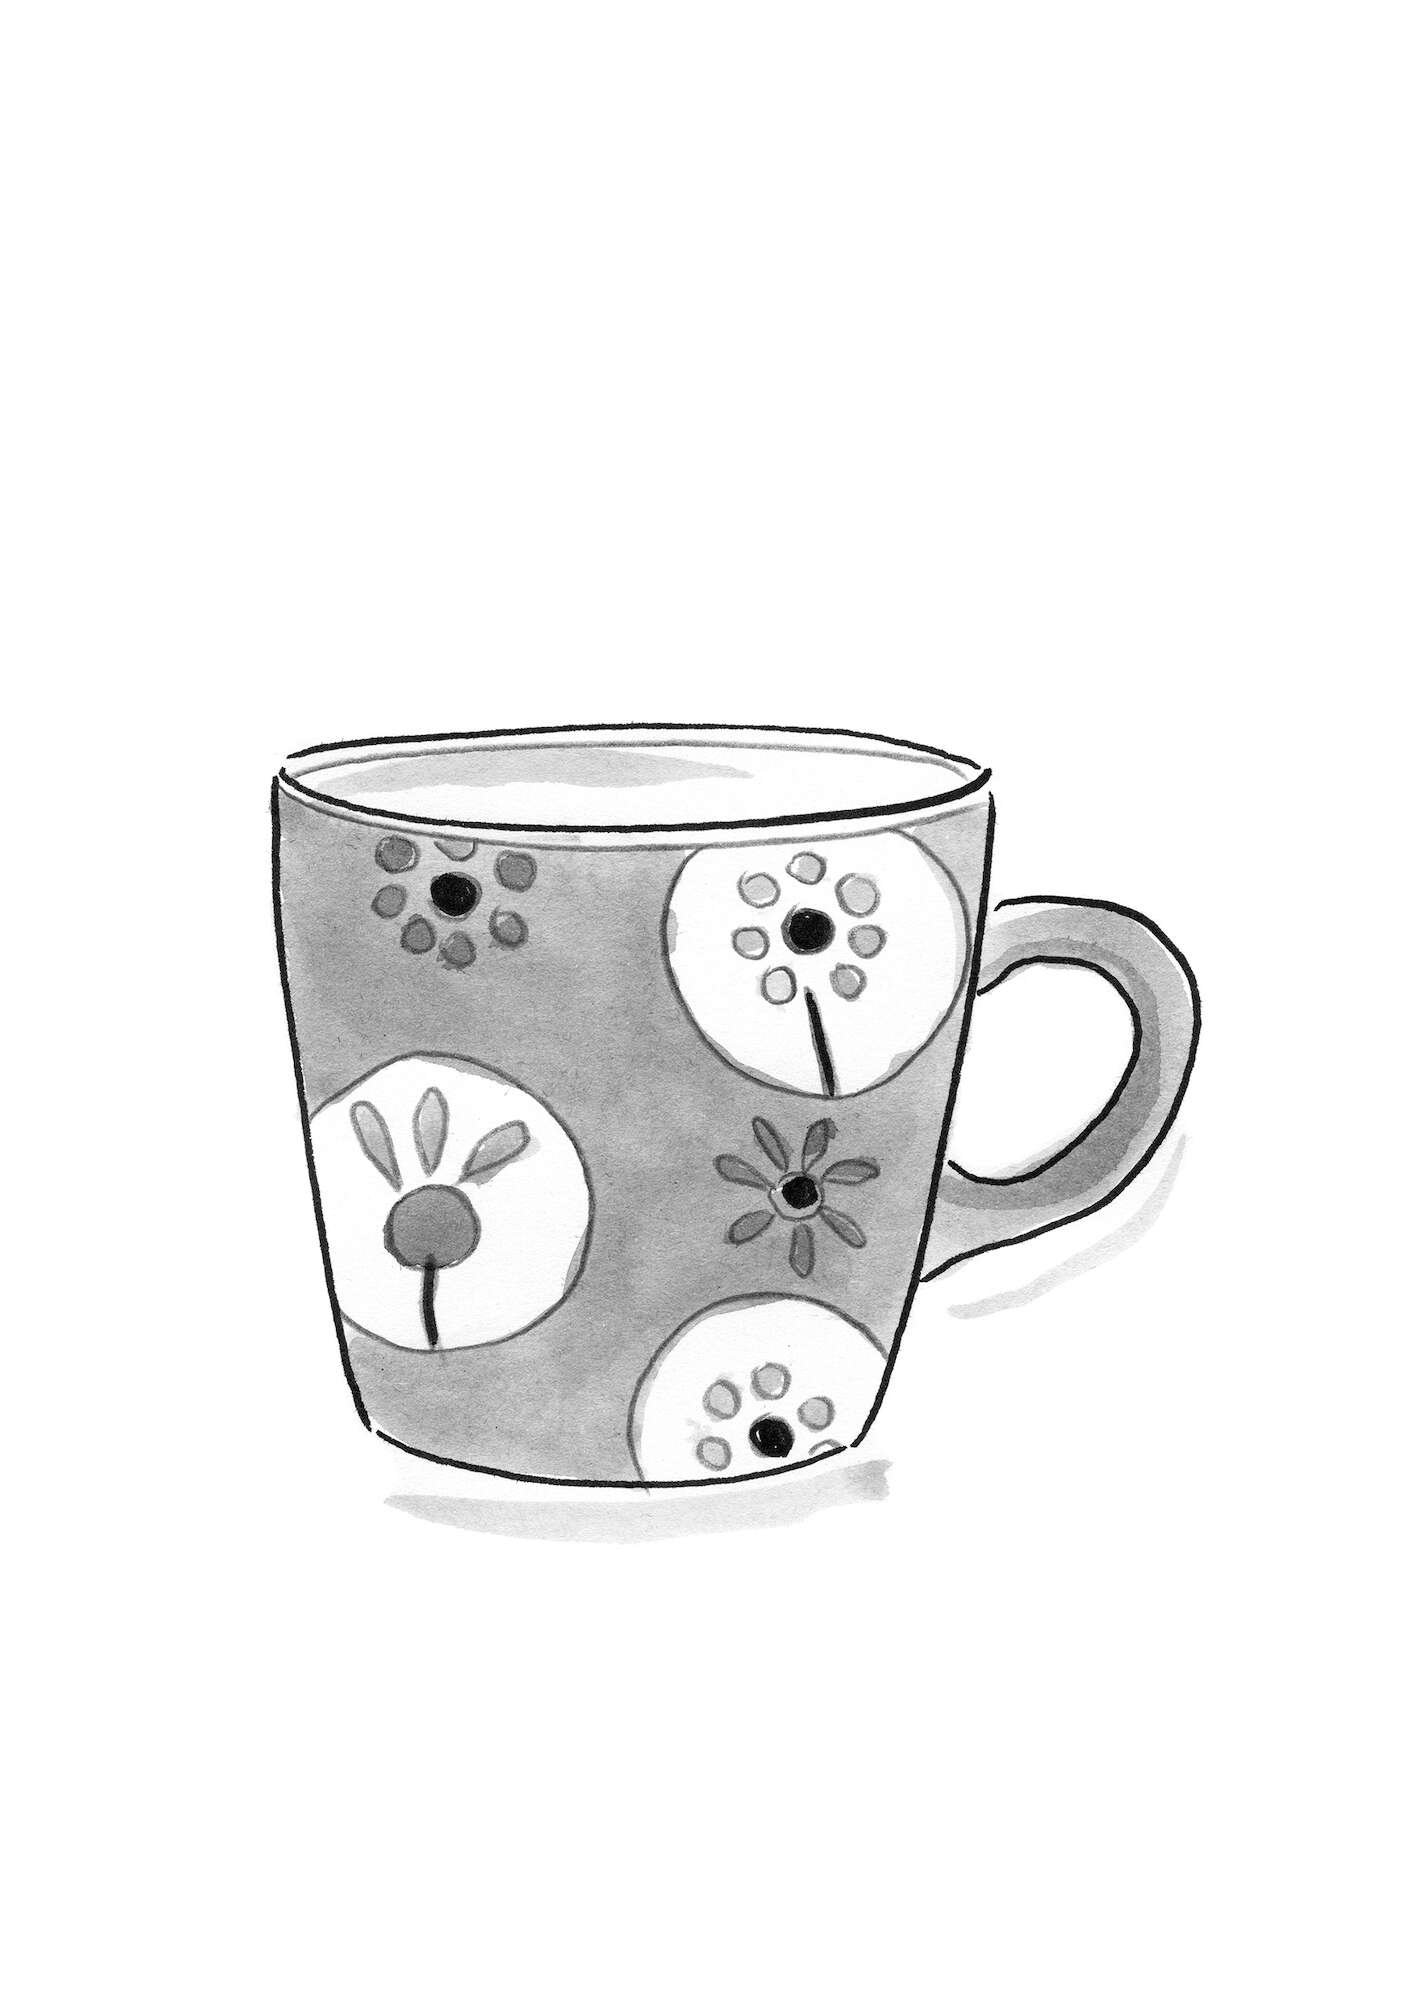 “Indra” ceramic mug rowan